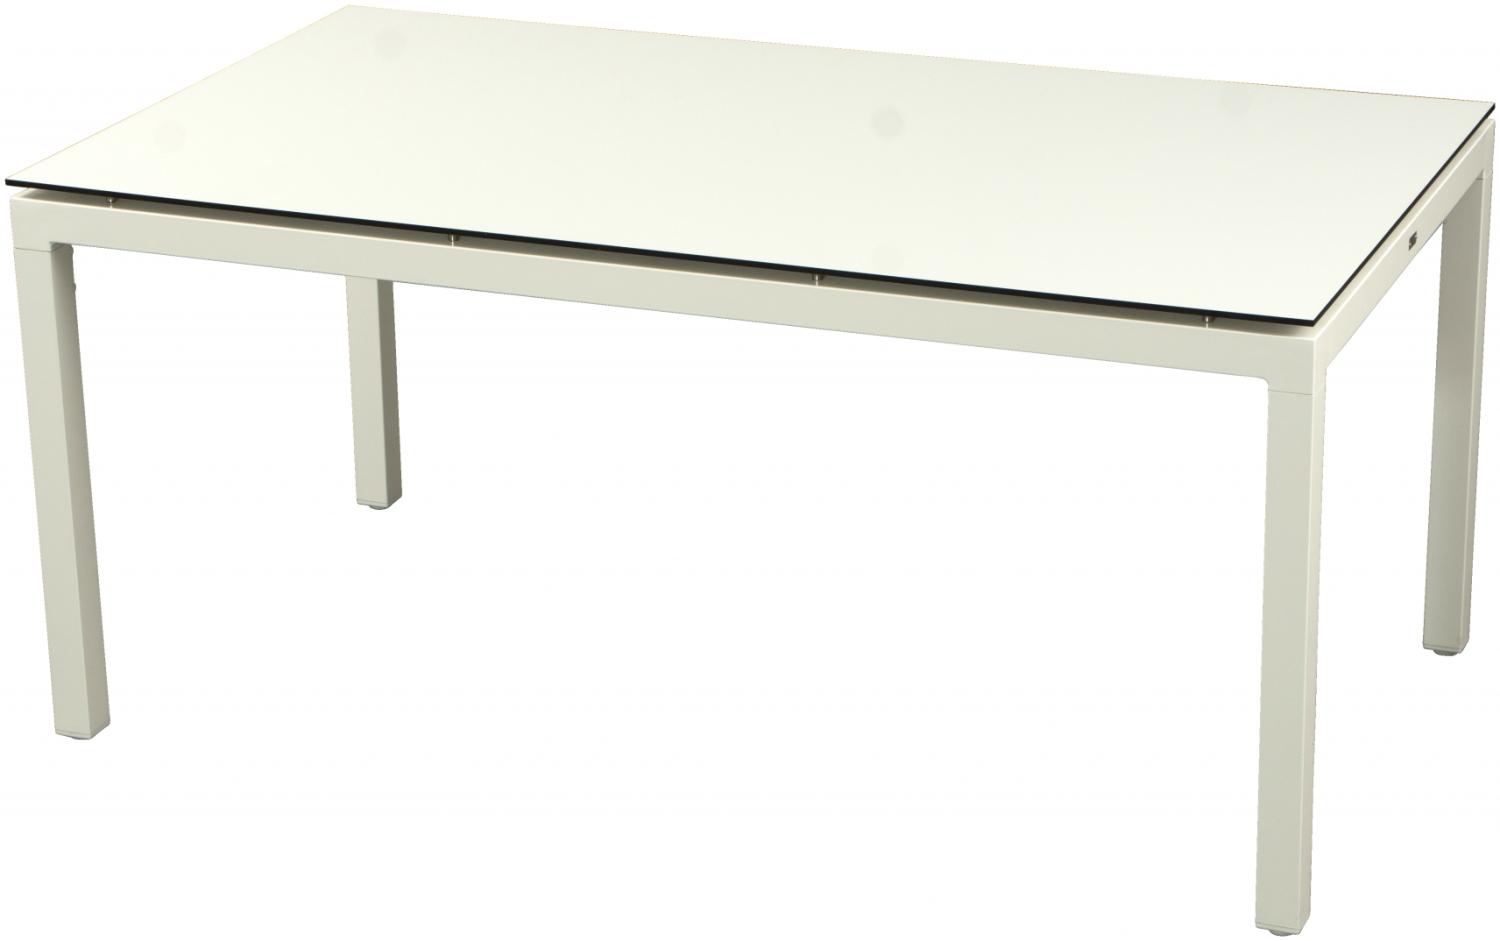 Inko Gartentisch Aluminium weiß 160x90 cm Terrassentisch Tischplatte nach Wahl Deropal anthrazit Bild 1